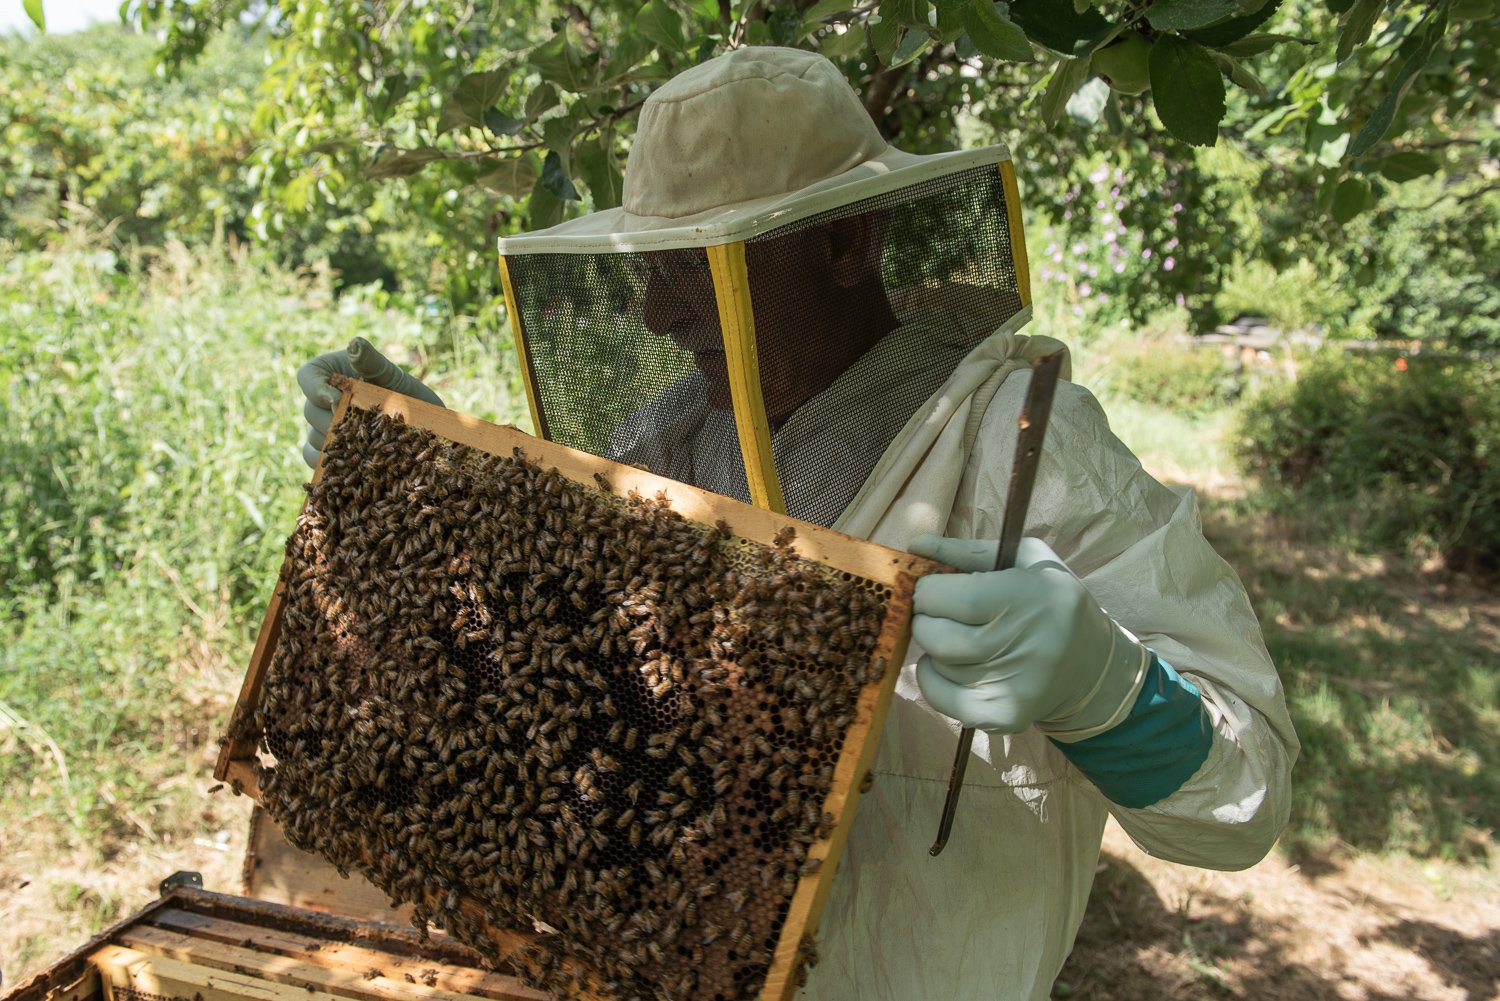  Tiziano Gardi, già docente di Apicoltura presso la UNIPG (Università degli Studi di Perugia)  ed esperto apistico nazionale su nomina del Ministero dell’Agricoltura e della Sovranità Alimentare e Forestale (MASAF), nel suo apiario per la selezione g